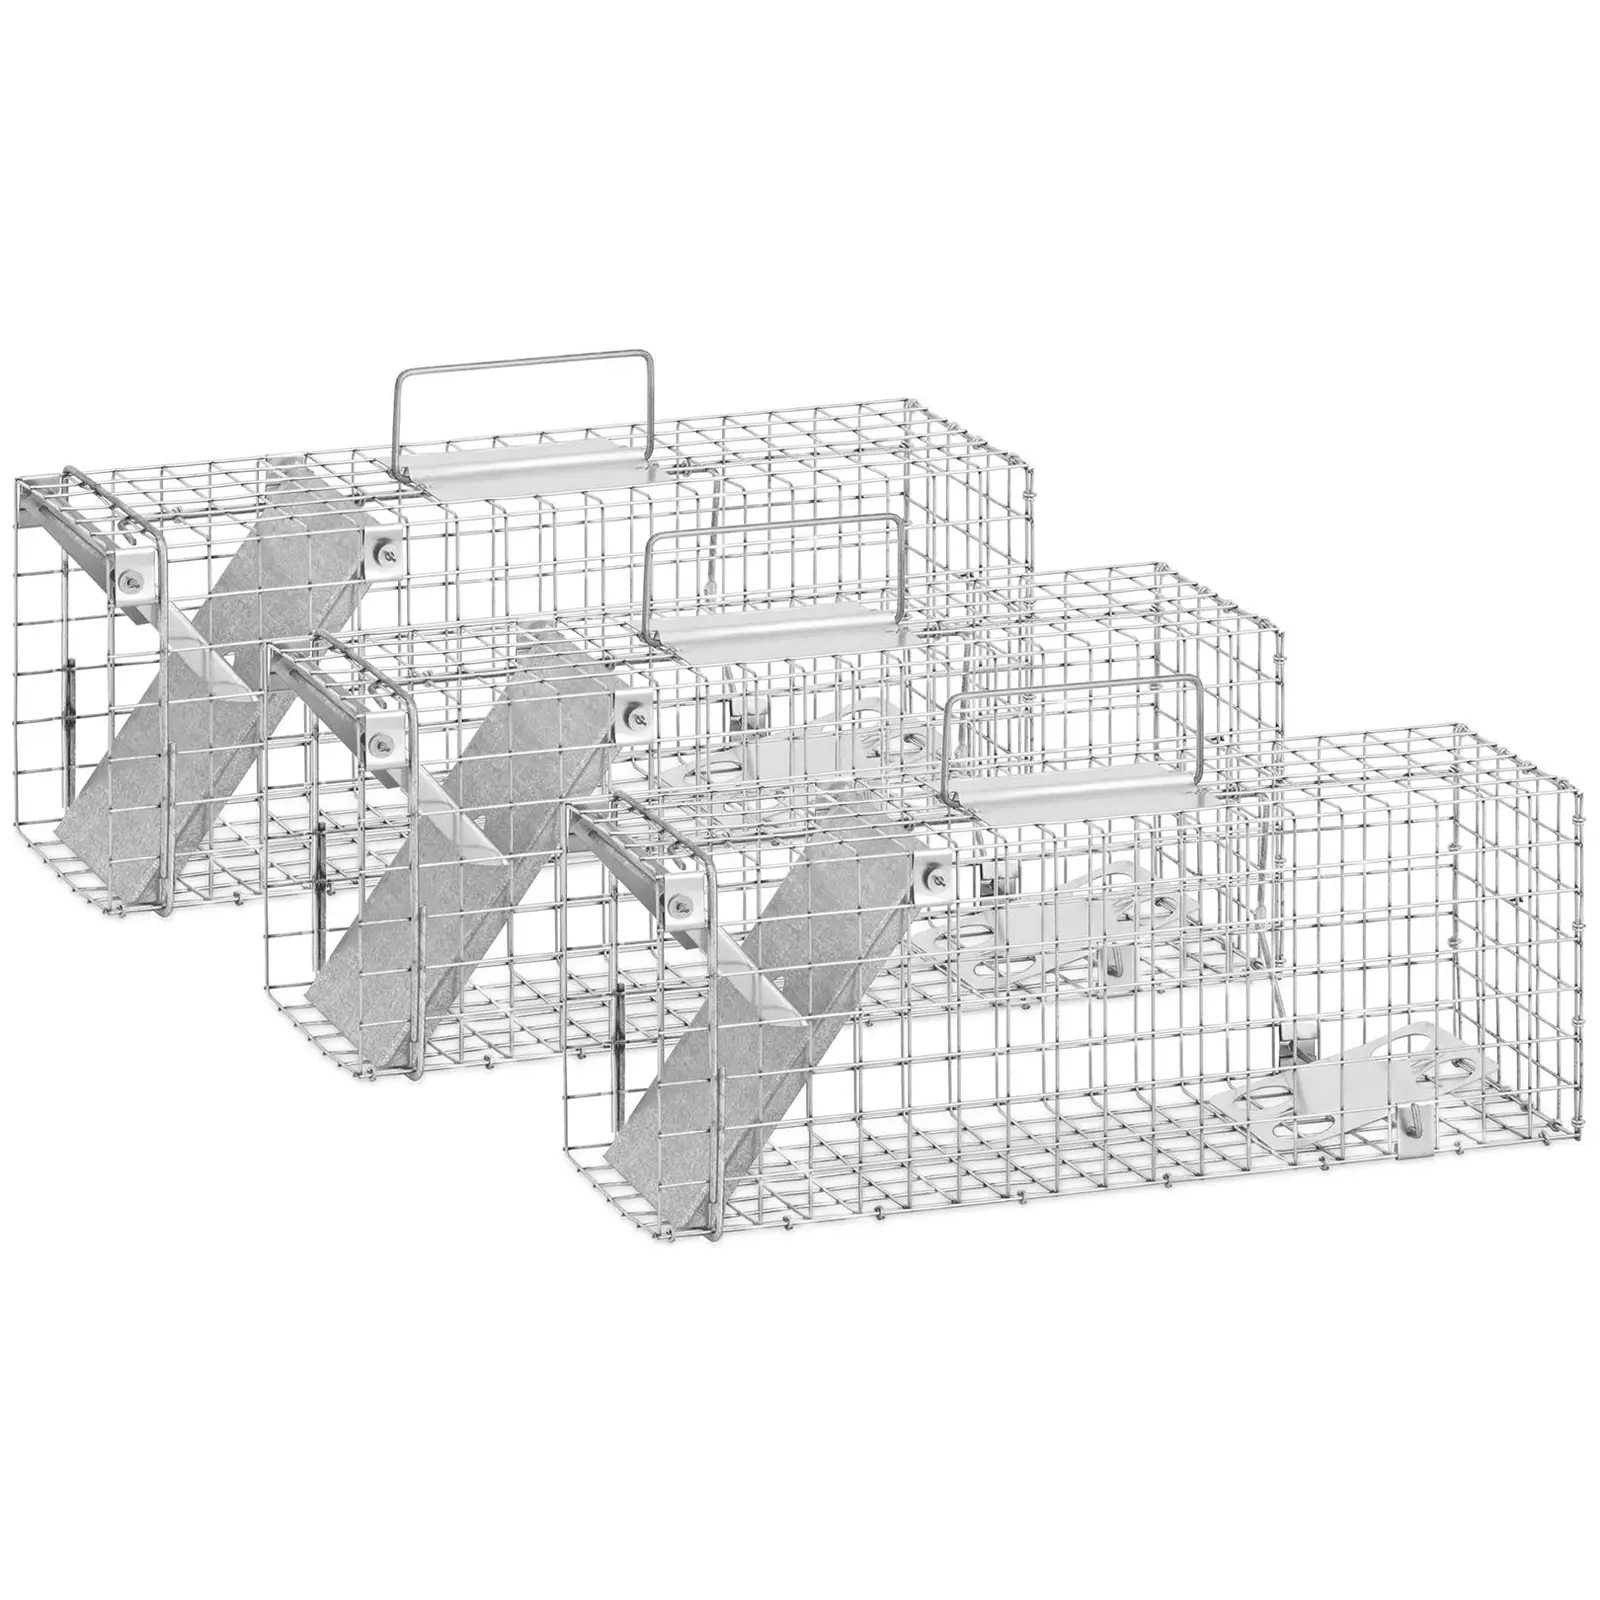 Trappola per animali - 50 x 17 x 20 cm - Dimensione griglia: 25 x 25 mm - 3 pezzi